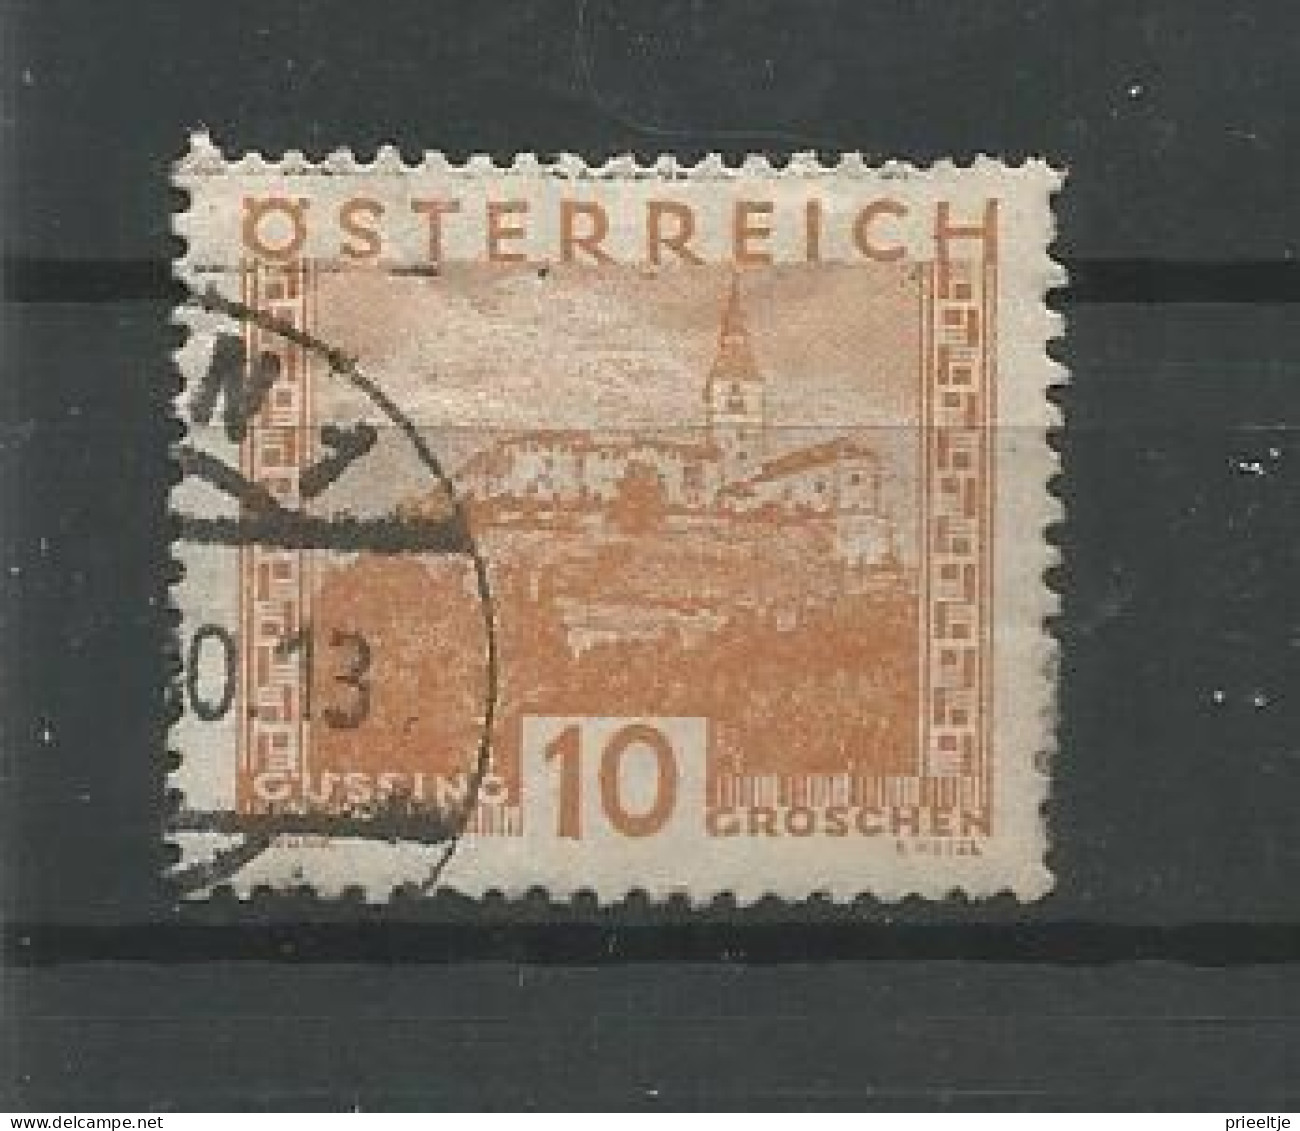 Austria - Oostenrijk 1929-31 Landscapes   Y.T. 378 (0) - Oblitérés